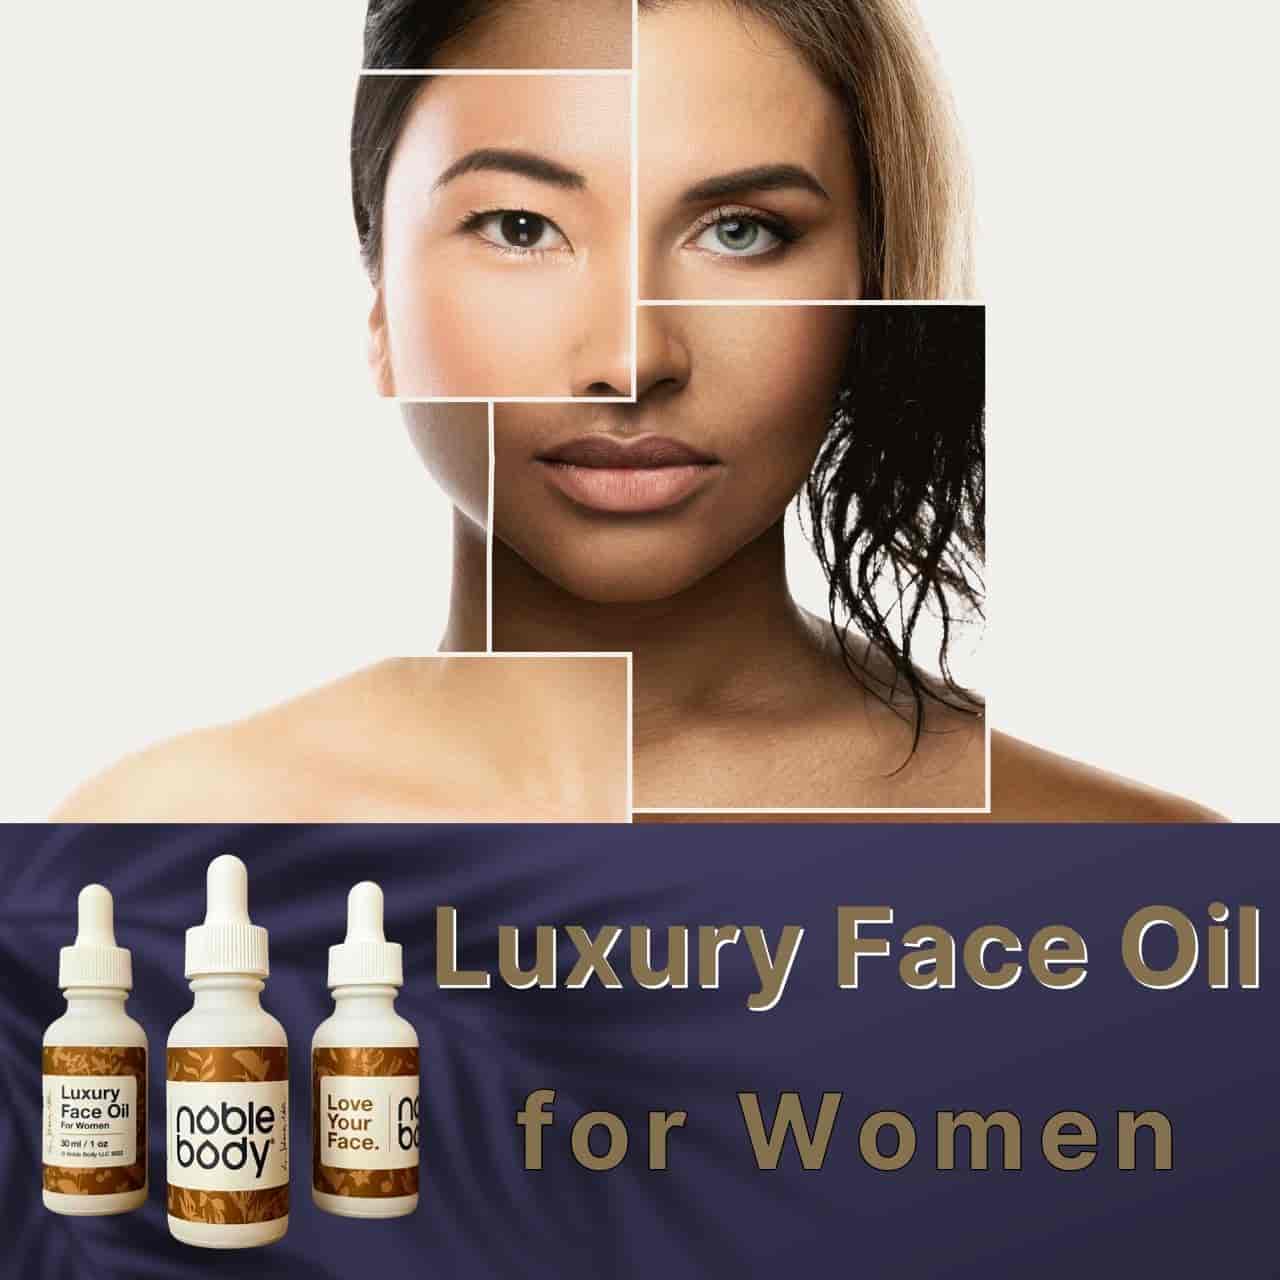 Luxury Face Oil for Women